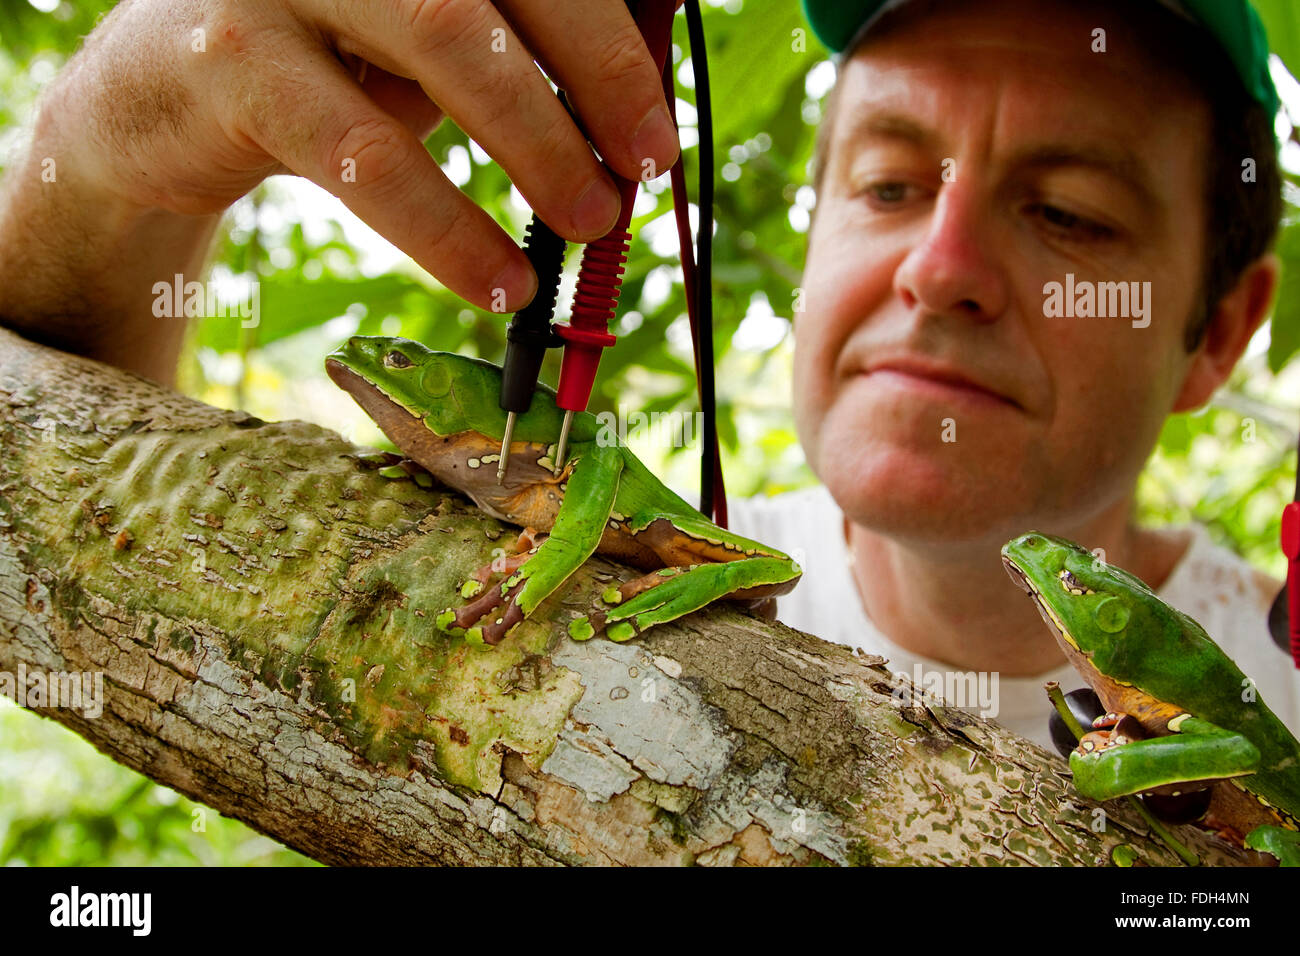 Naturópata científico, pruebas kambo ranas. La piel de ranas venenosas. Alto Jurua. Croa, Amazon. Brasil Foto de stock